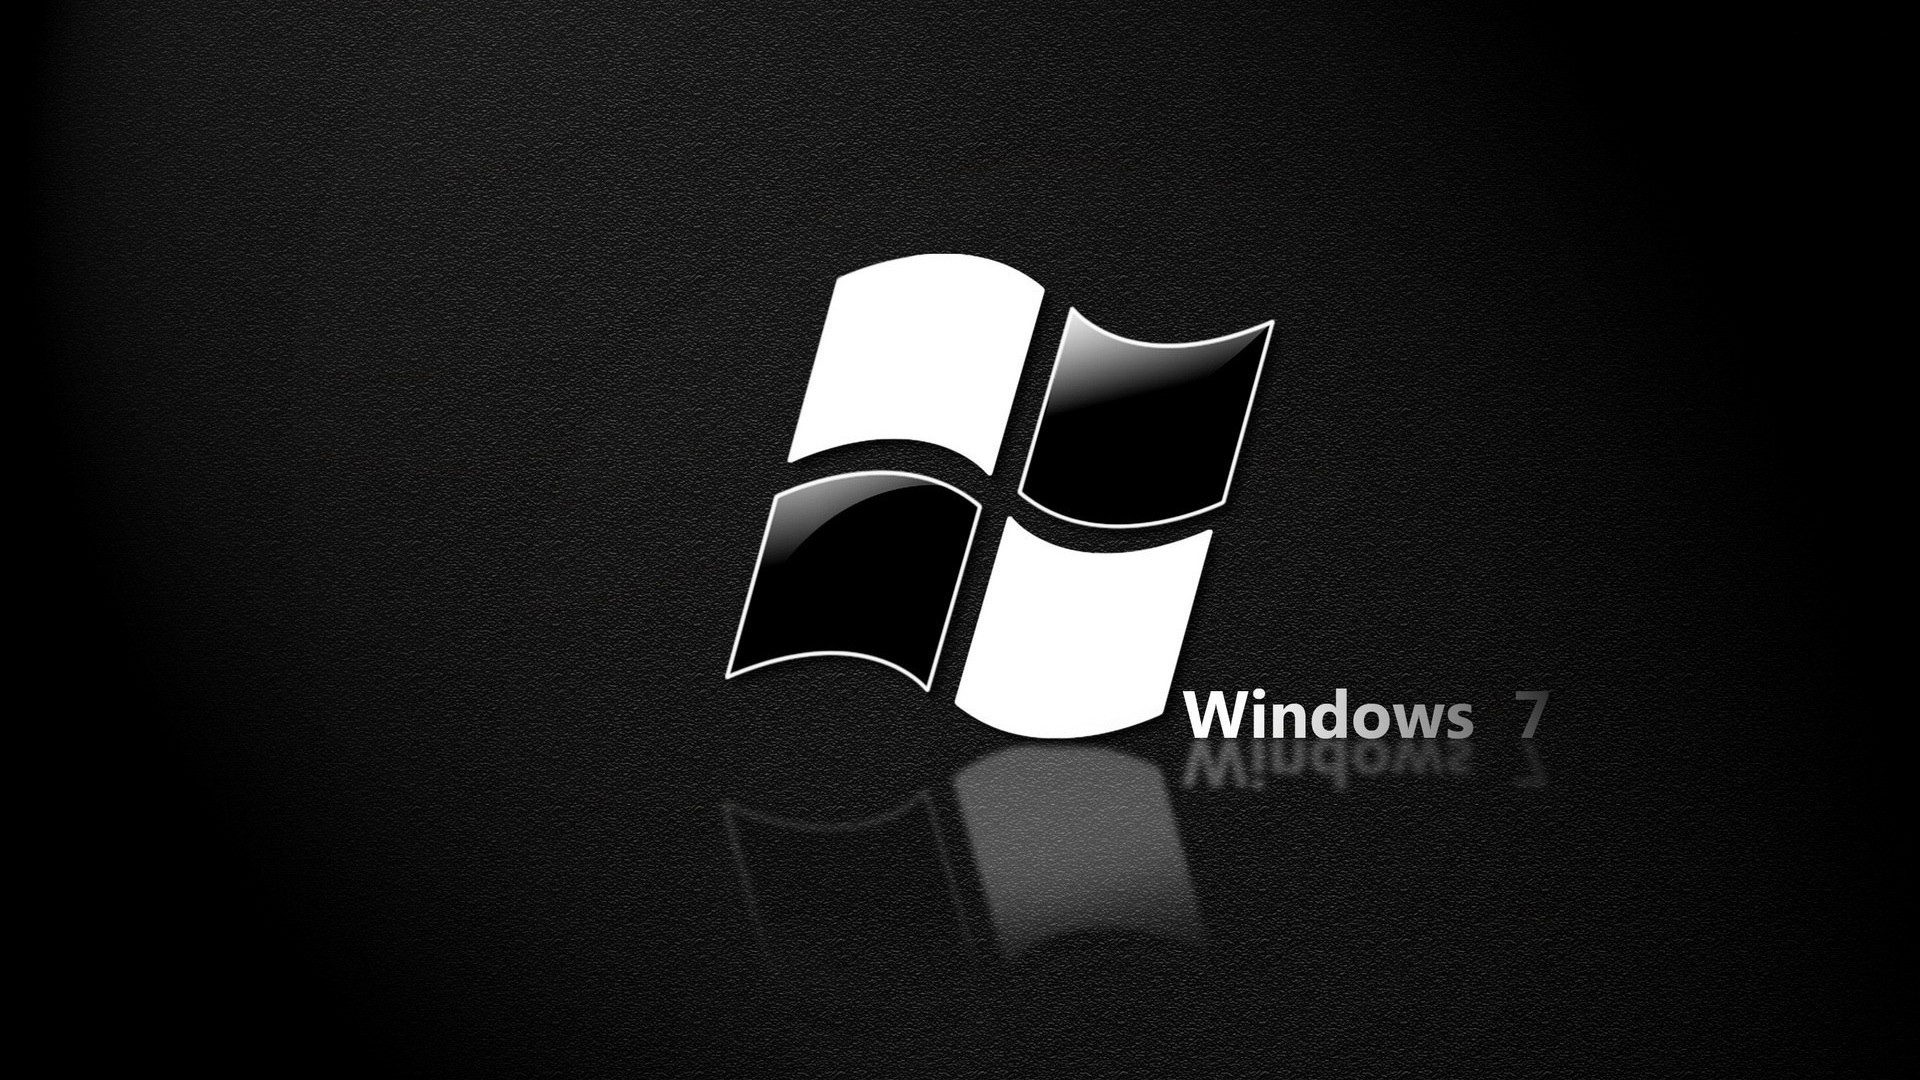 Windows 7 Black High Resolution Wallpaper : Brands Wallpaper ...